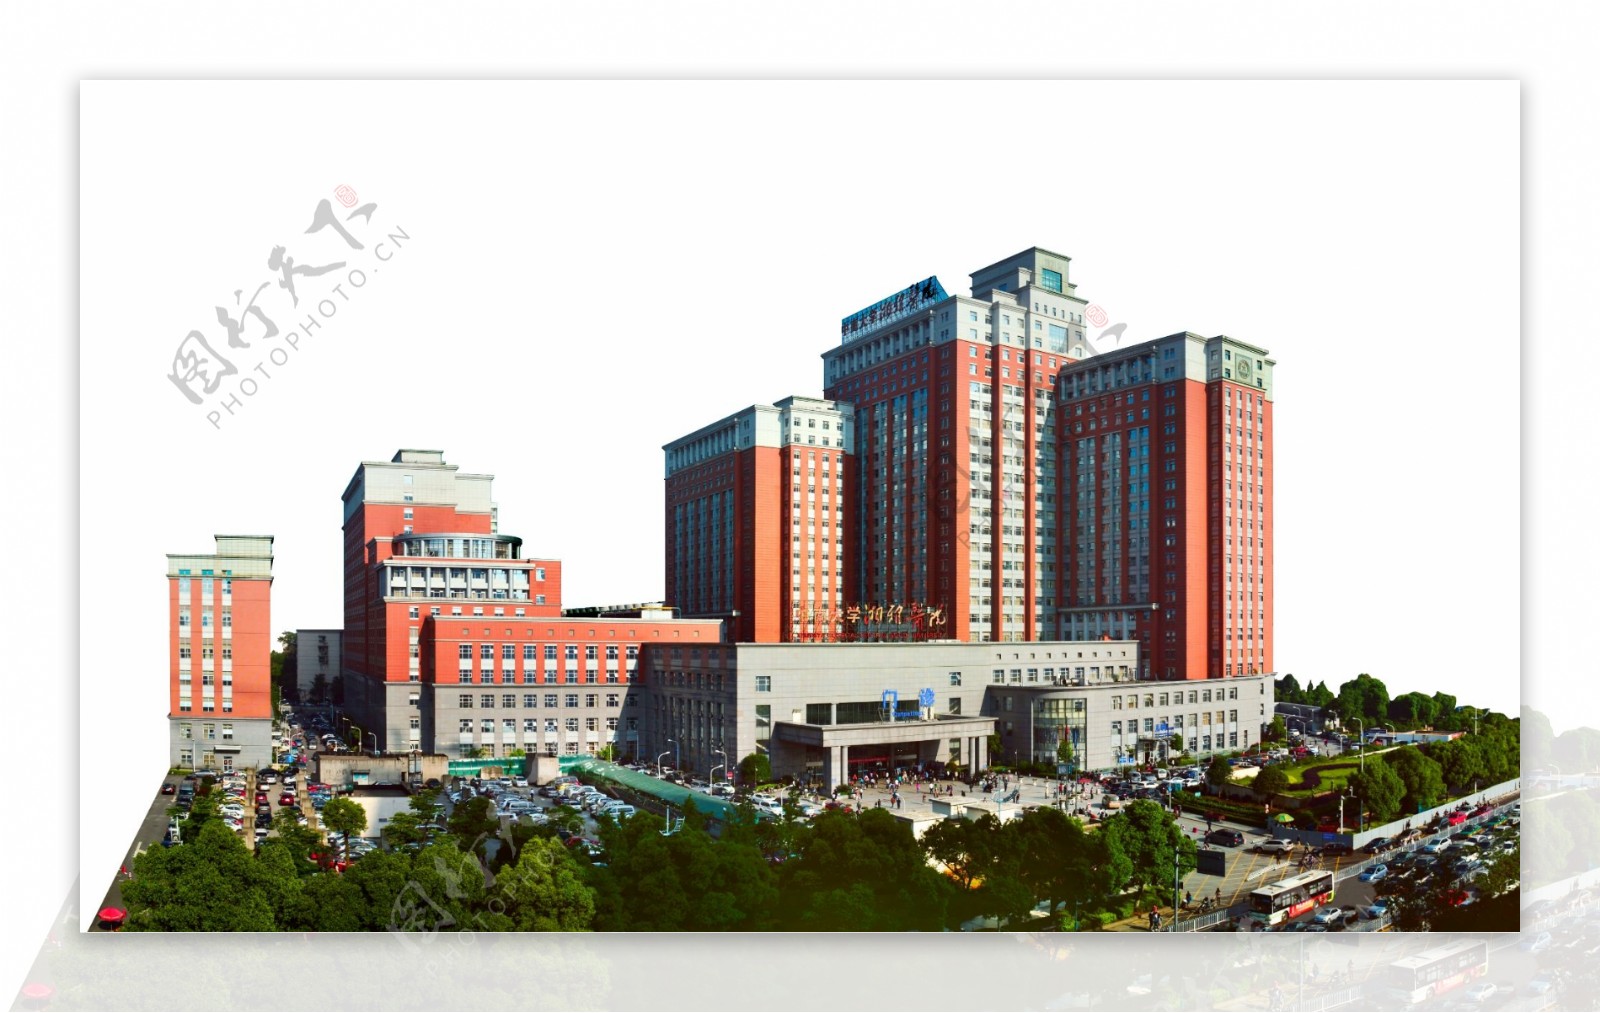 湘雅医院建筑红楼